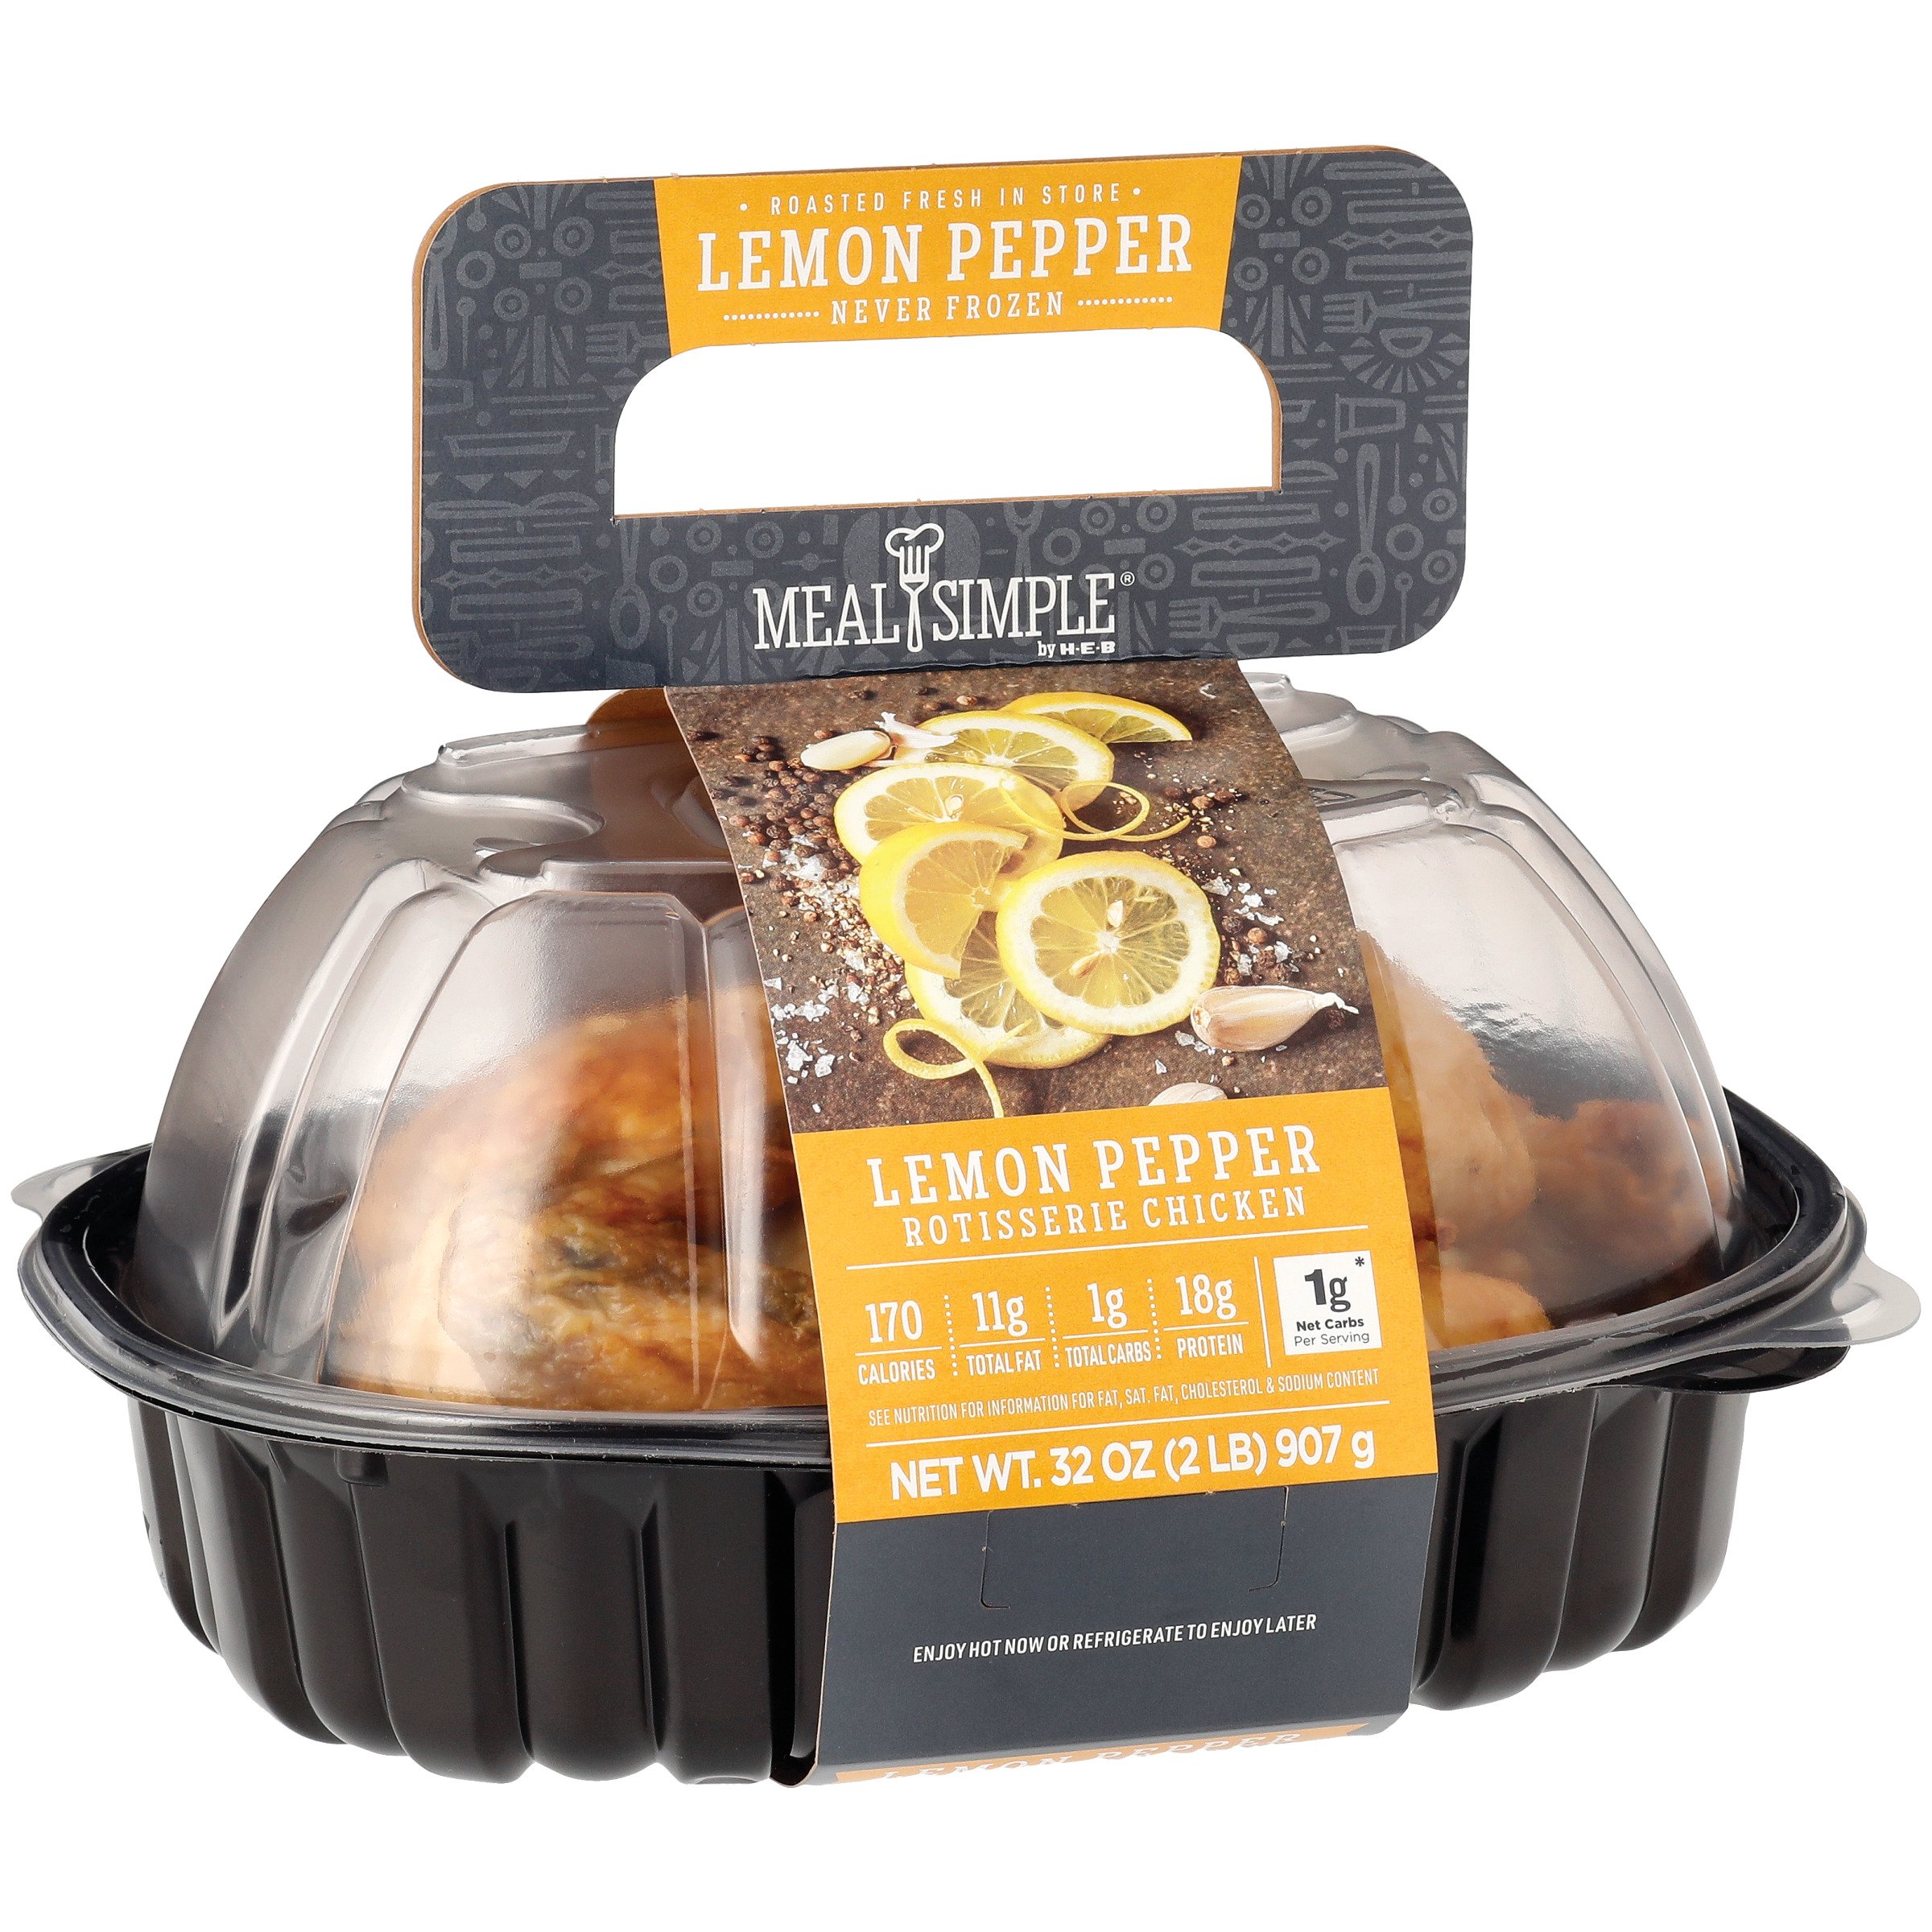 Buy Lemon Pepper Online  Order Lemon Pepper All Natural